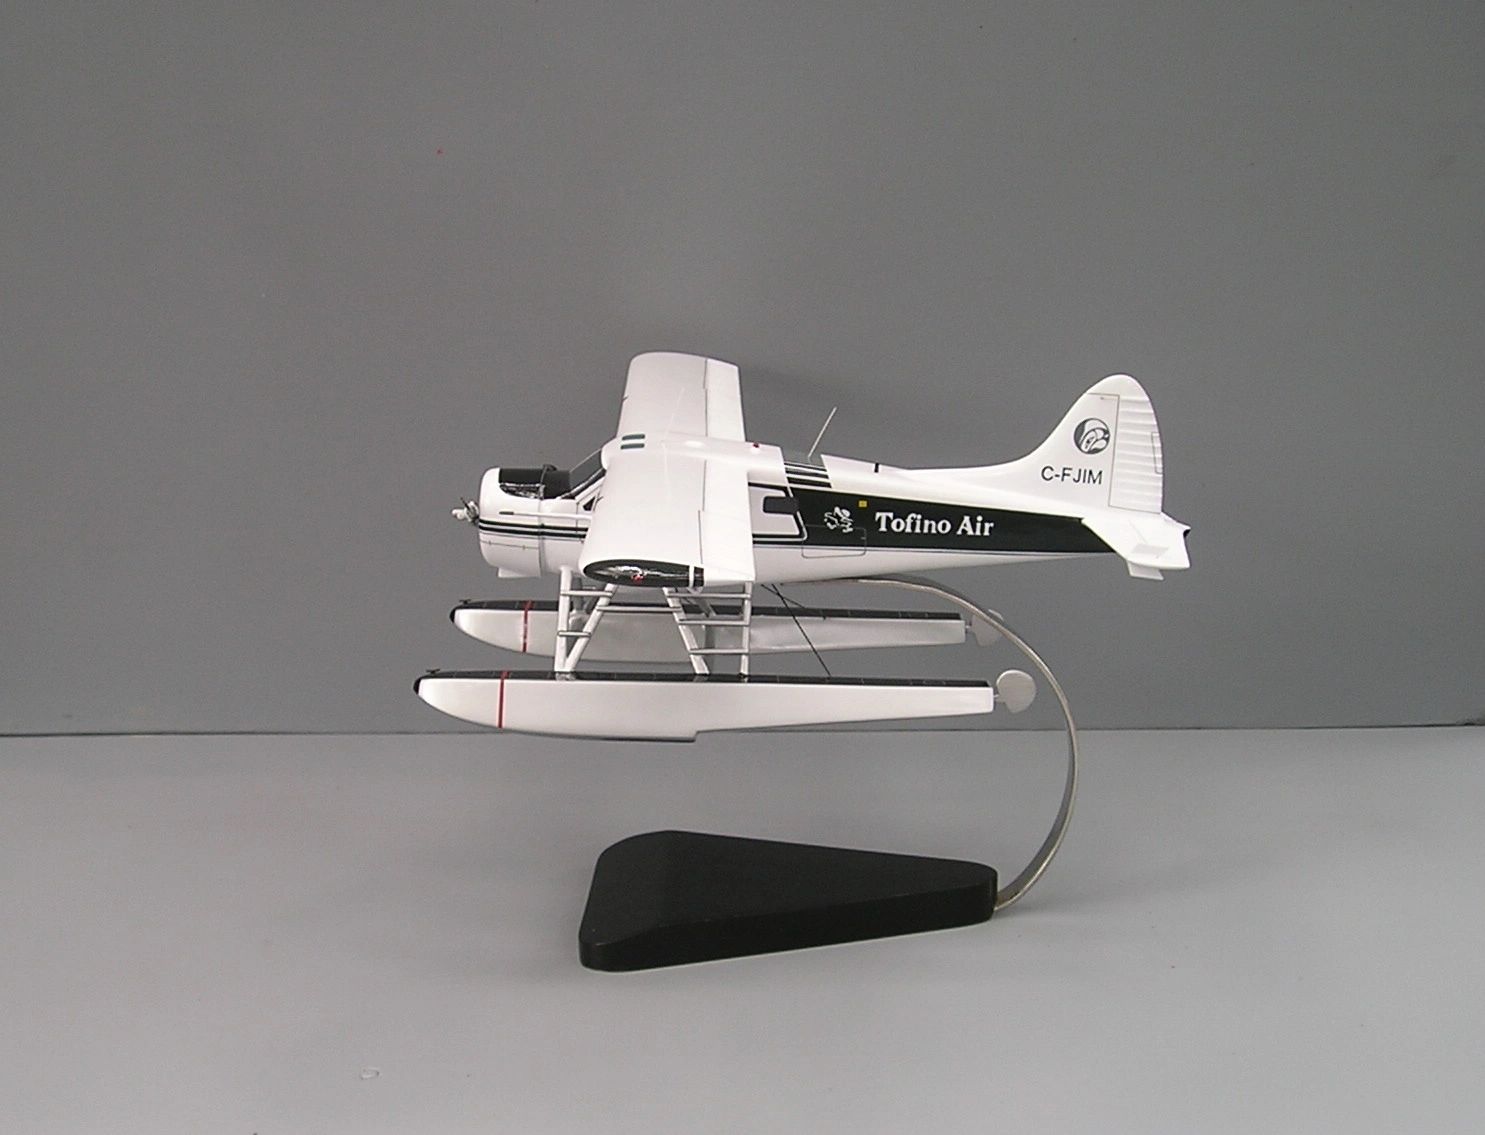 DHC-2 Beaver custom model